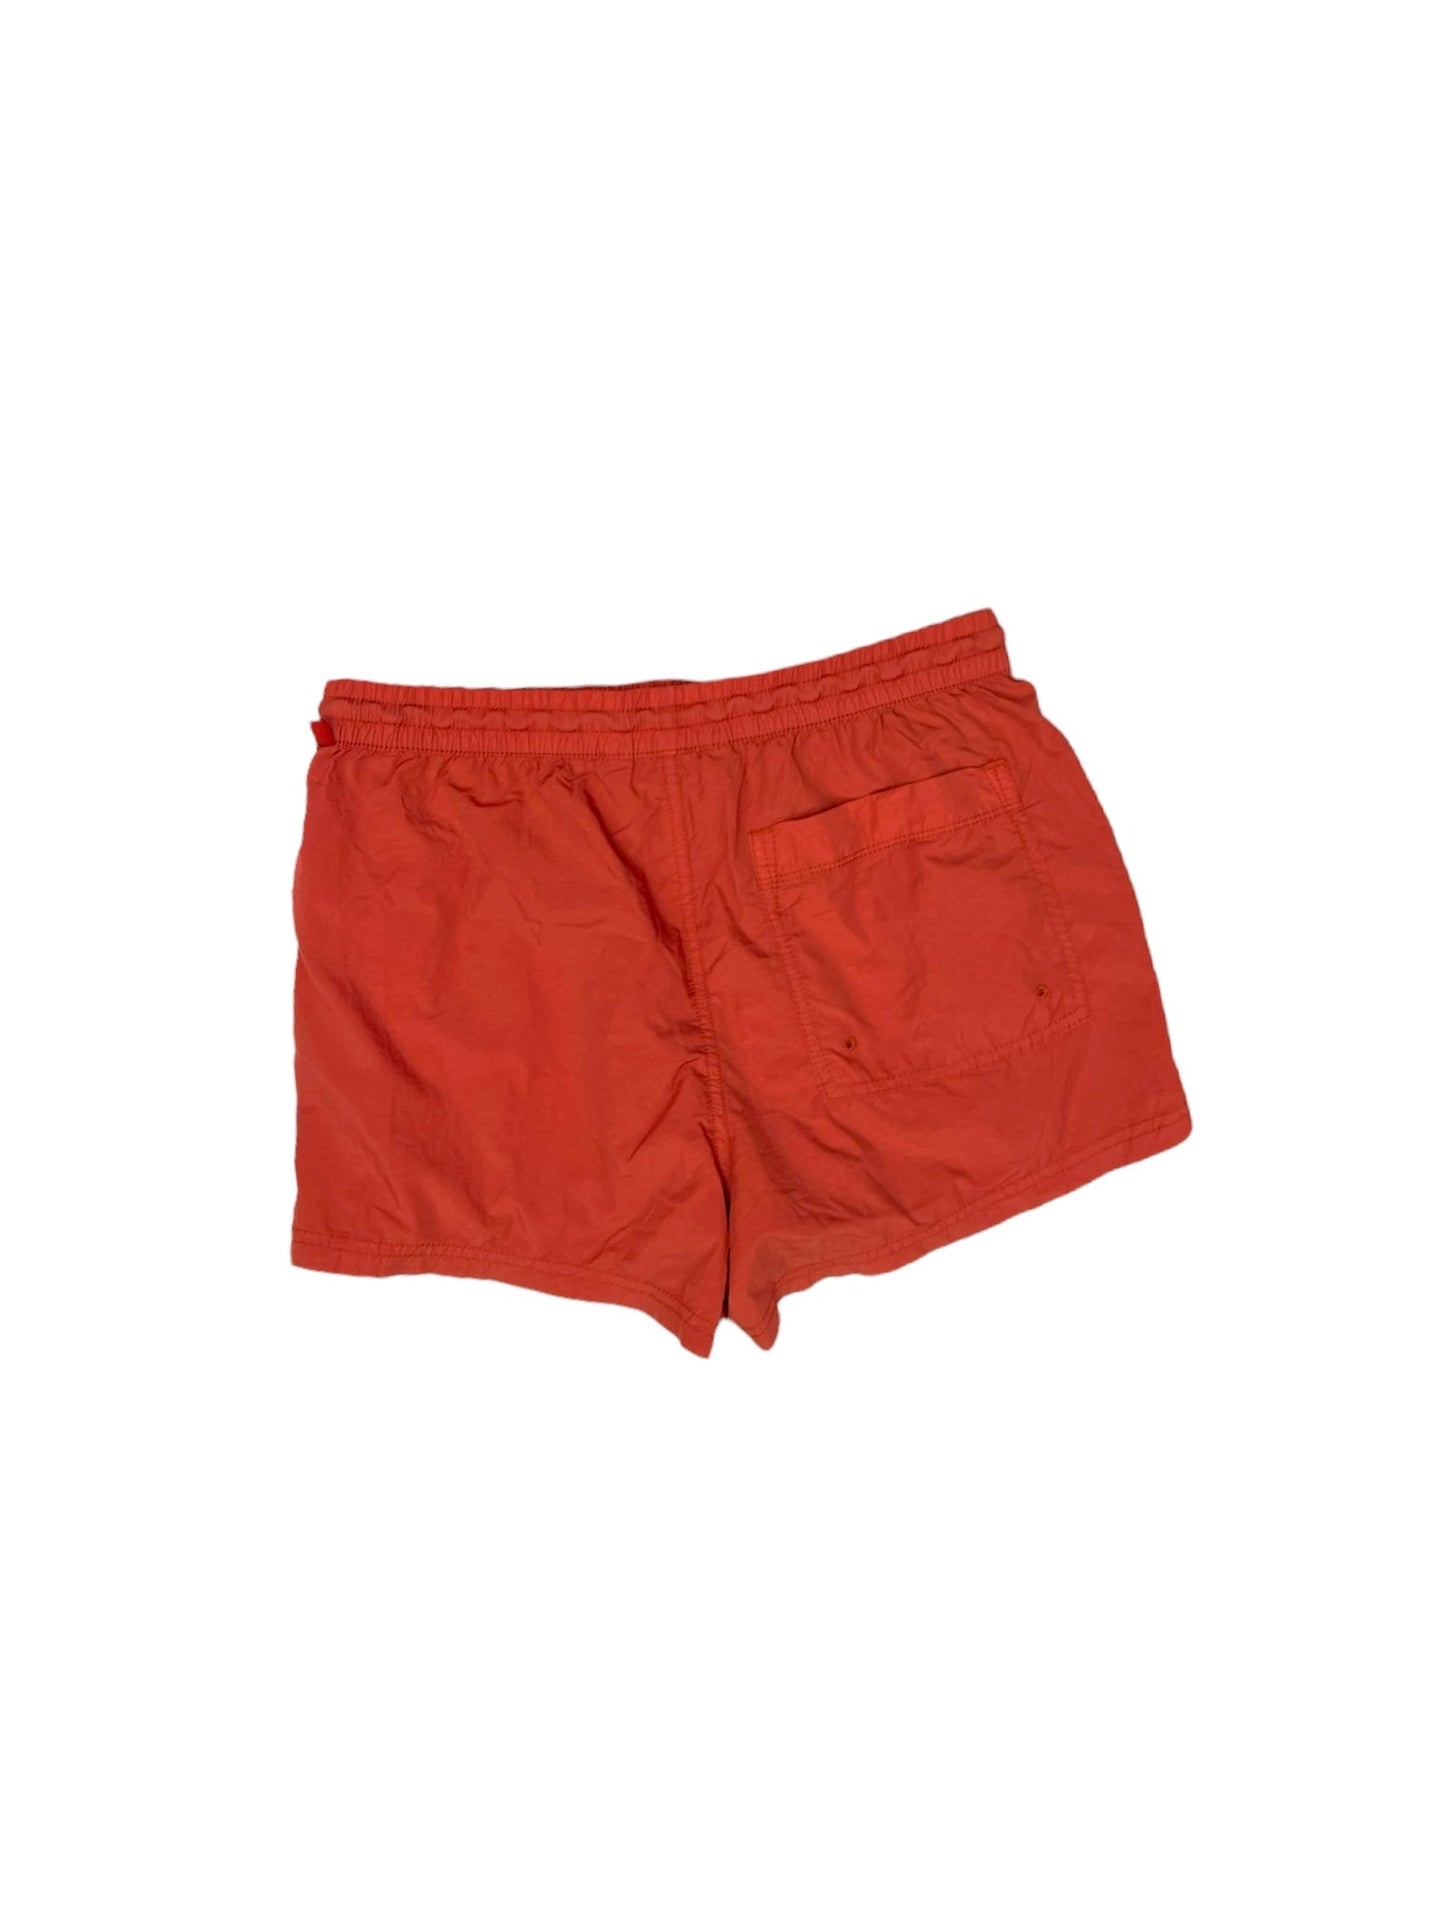 Orange Shorts Athleta, Size 4